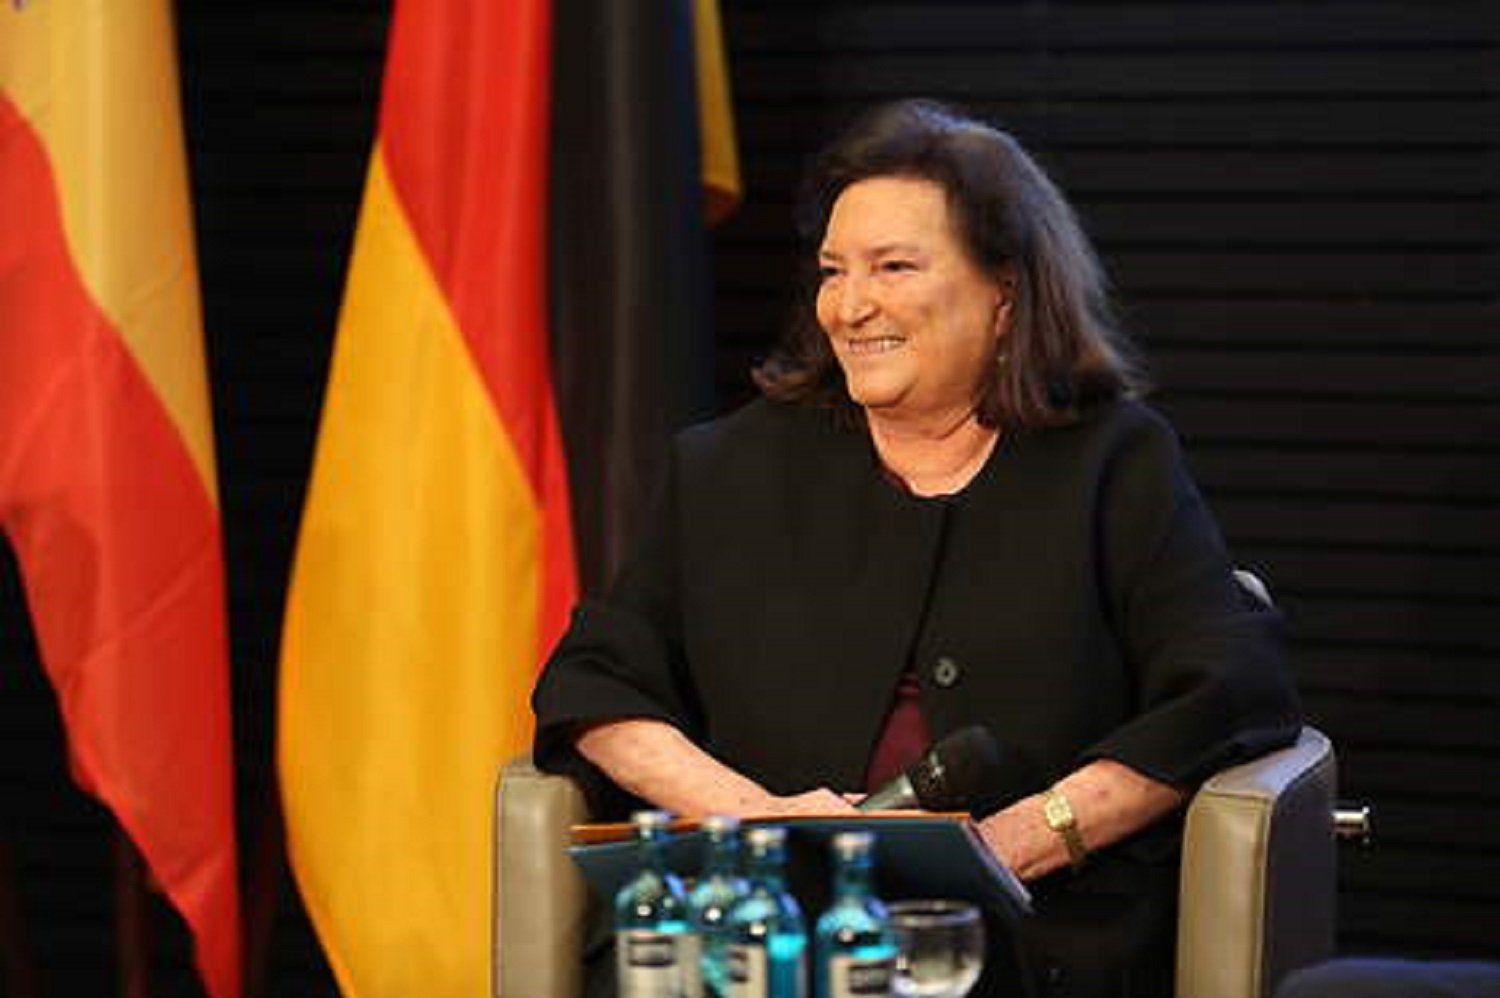 La embajadora de España contraataca con cartas en diarios alemanes